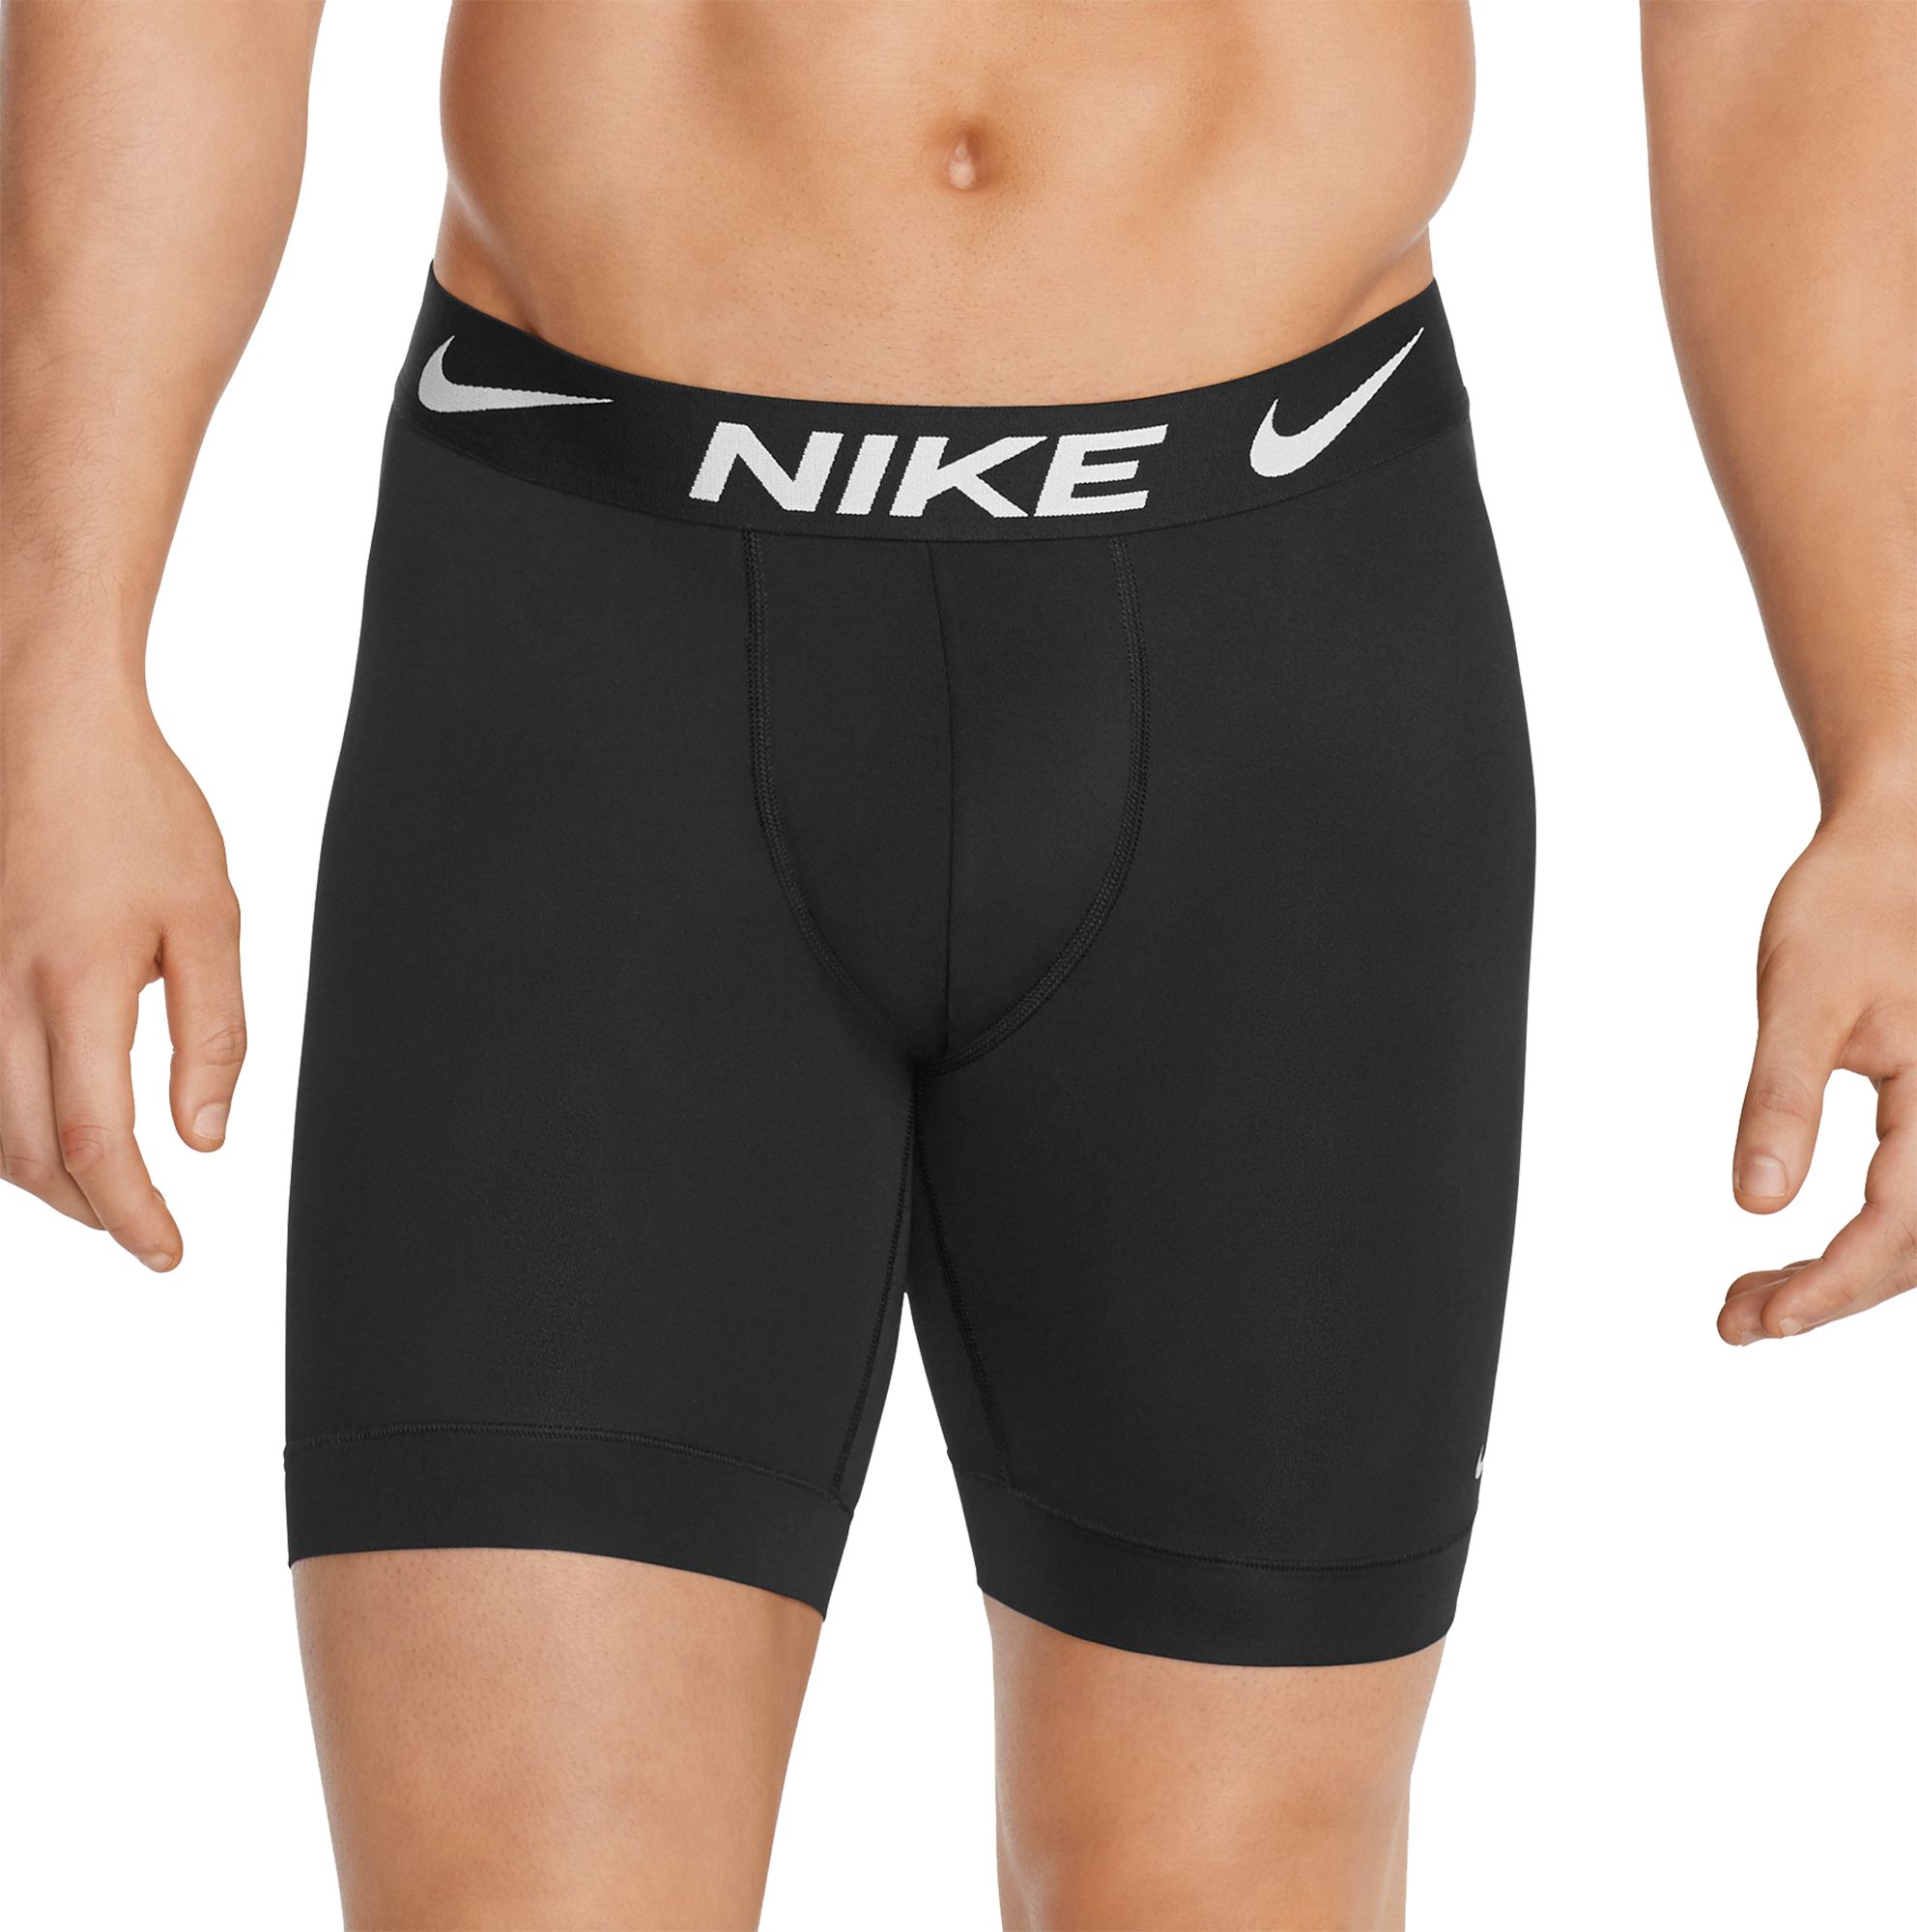 nike men's long underwear